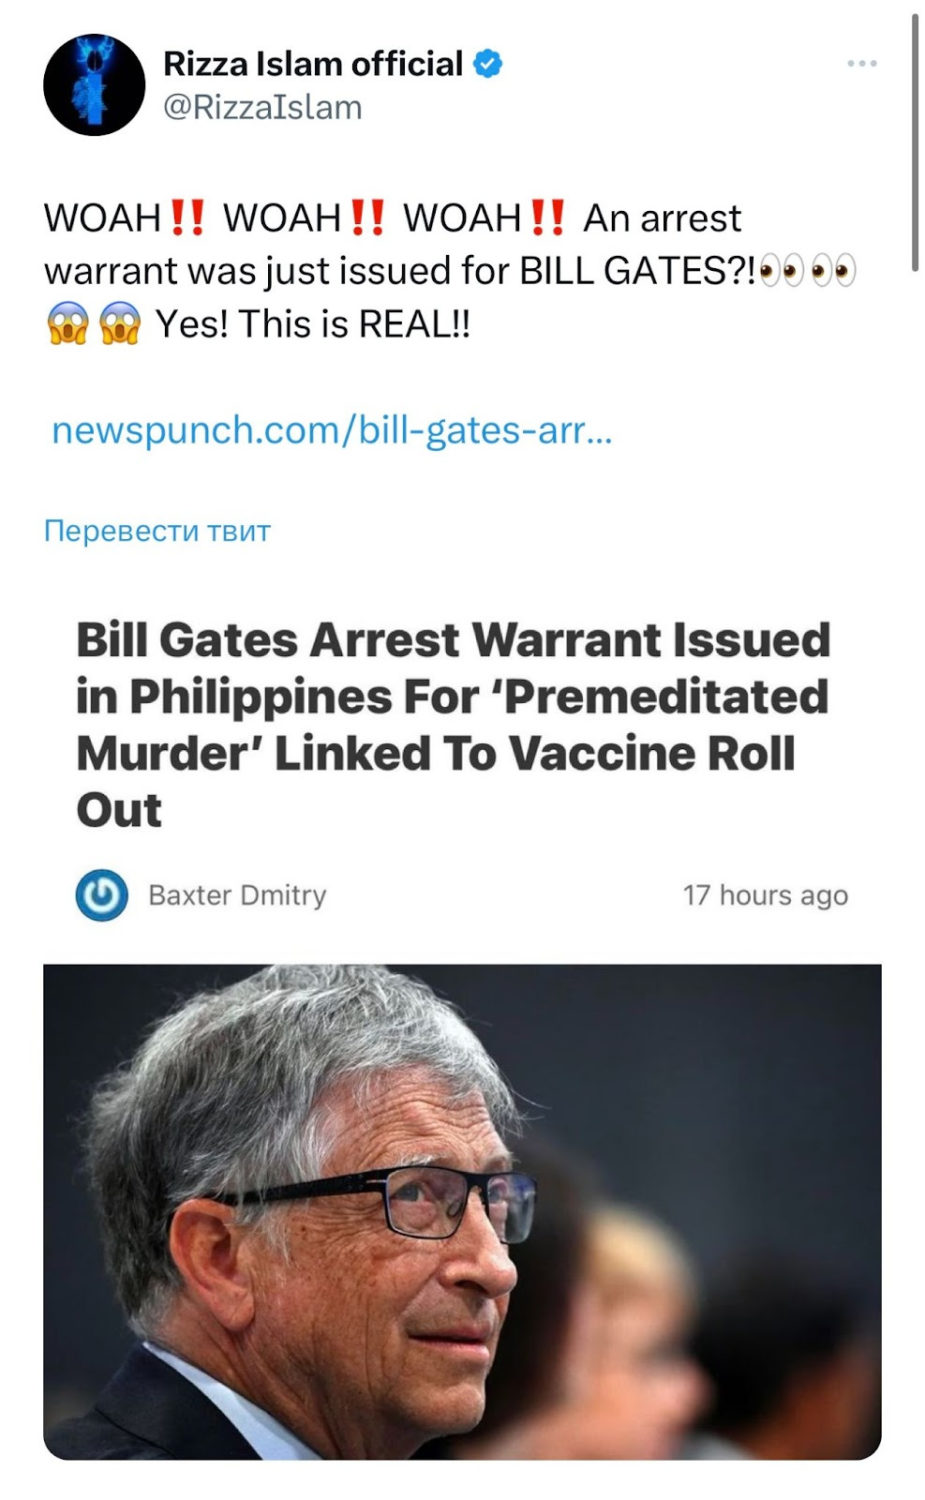 “Билл Гейтс вакциналардын коронавирустан дагы коркунучтуу экенин айтты”. Текшеребиз